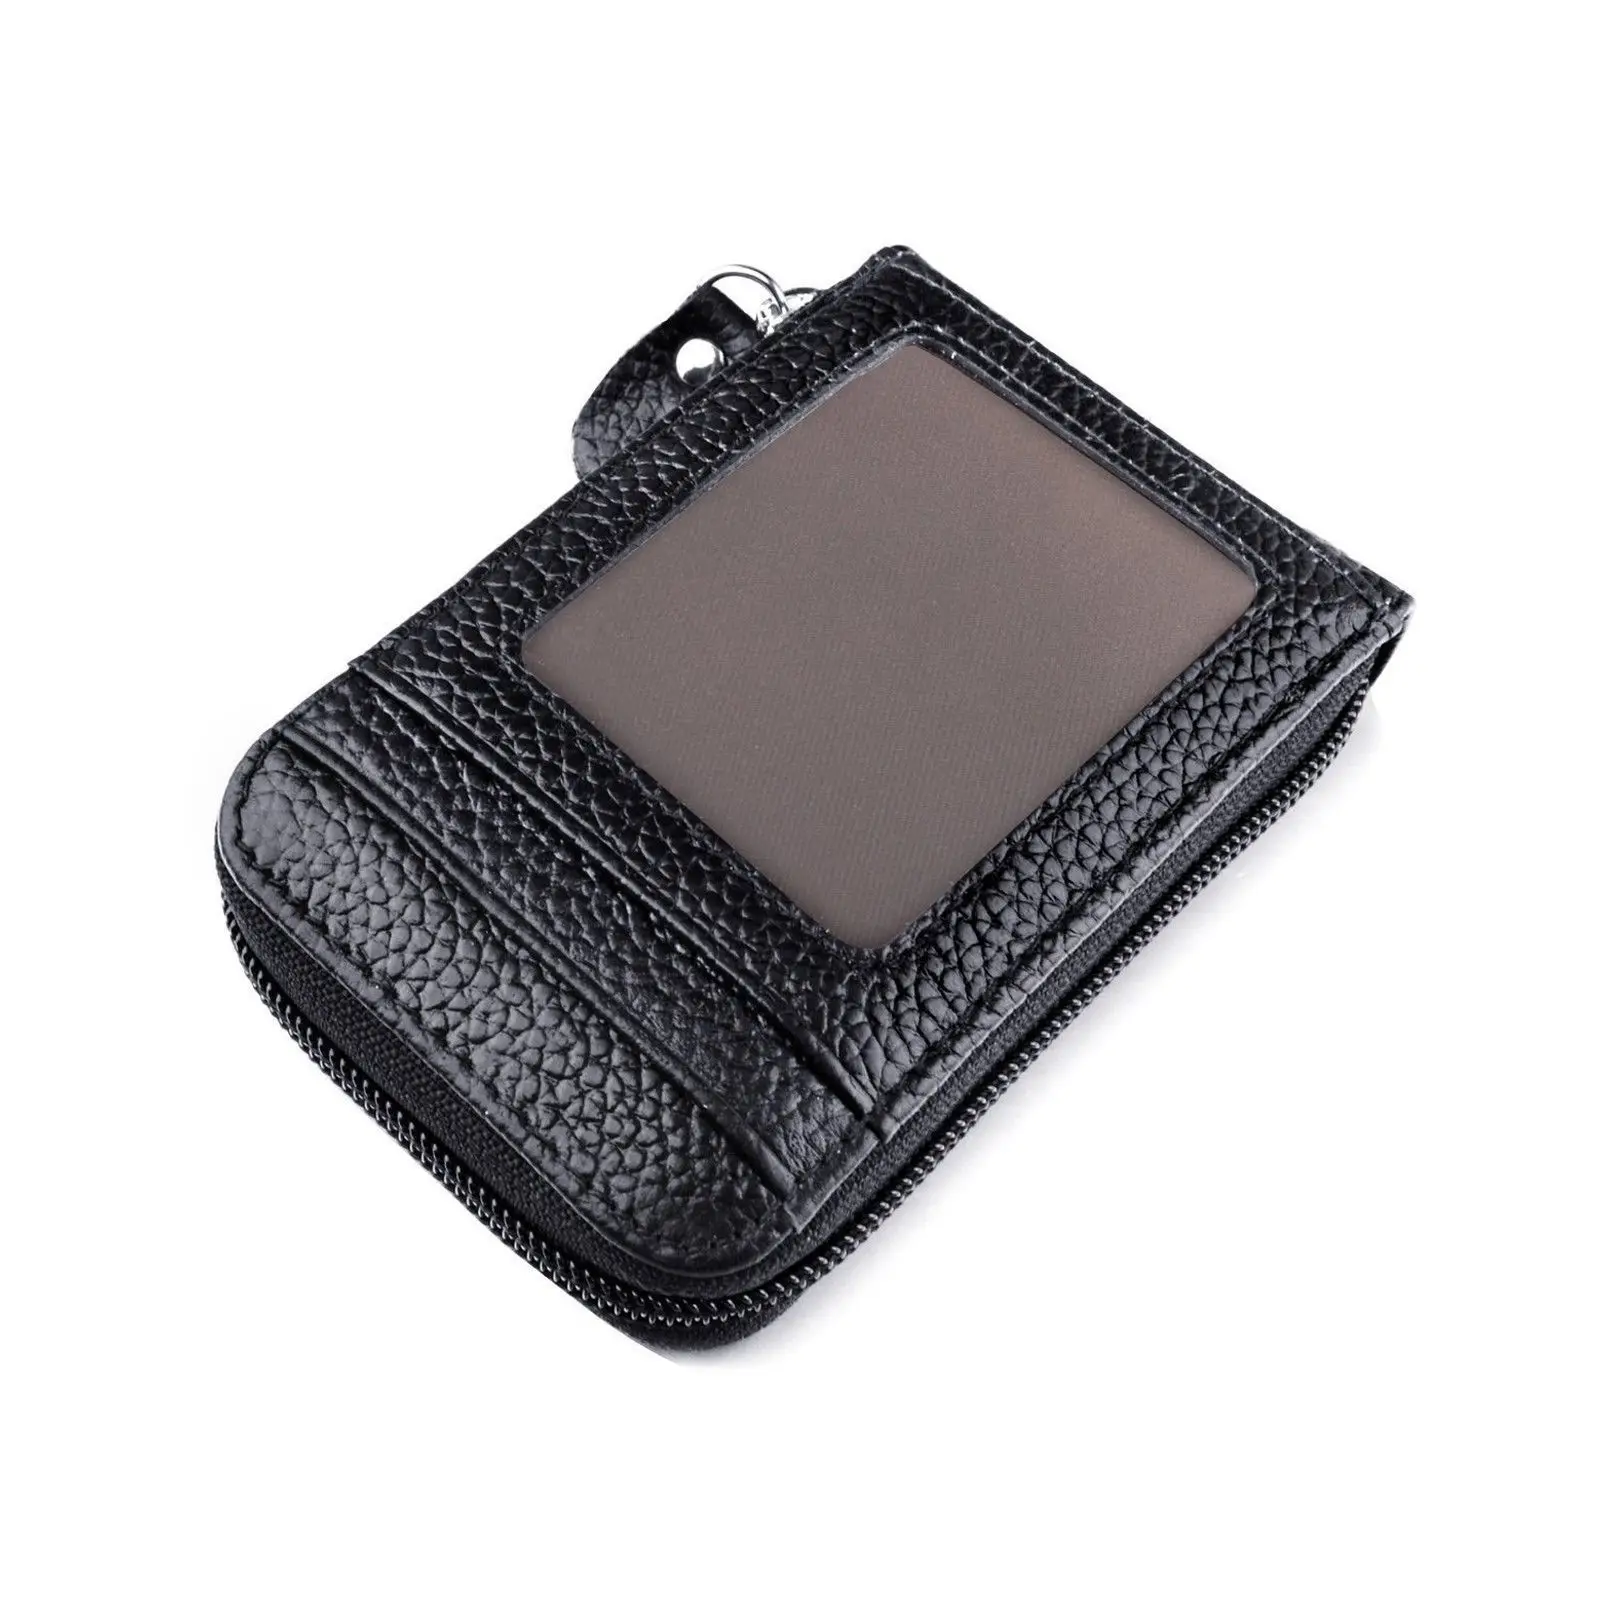 Мужская сумка-кошелек кожаный держатель для кредитных карт RFID Блокировка сумки с карманами на молнии Новинка